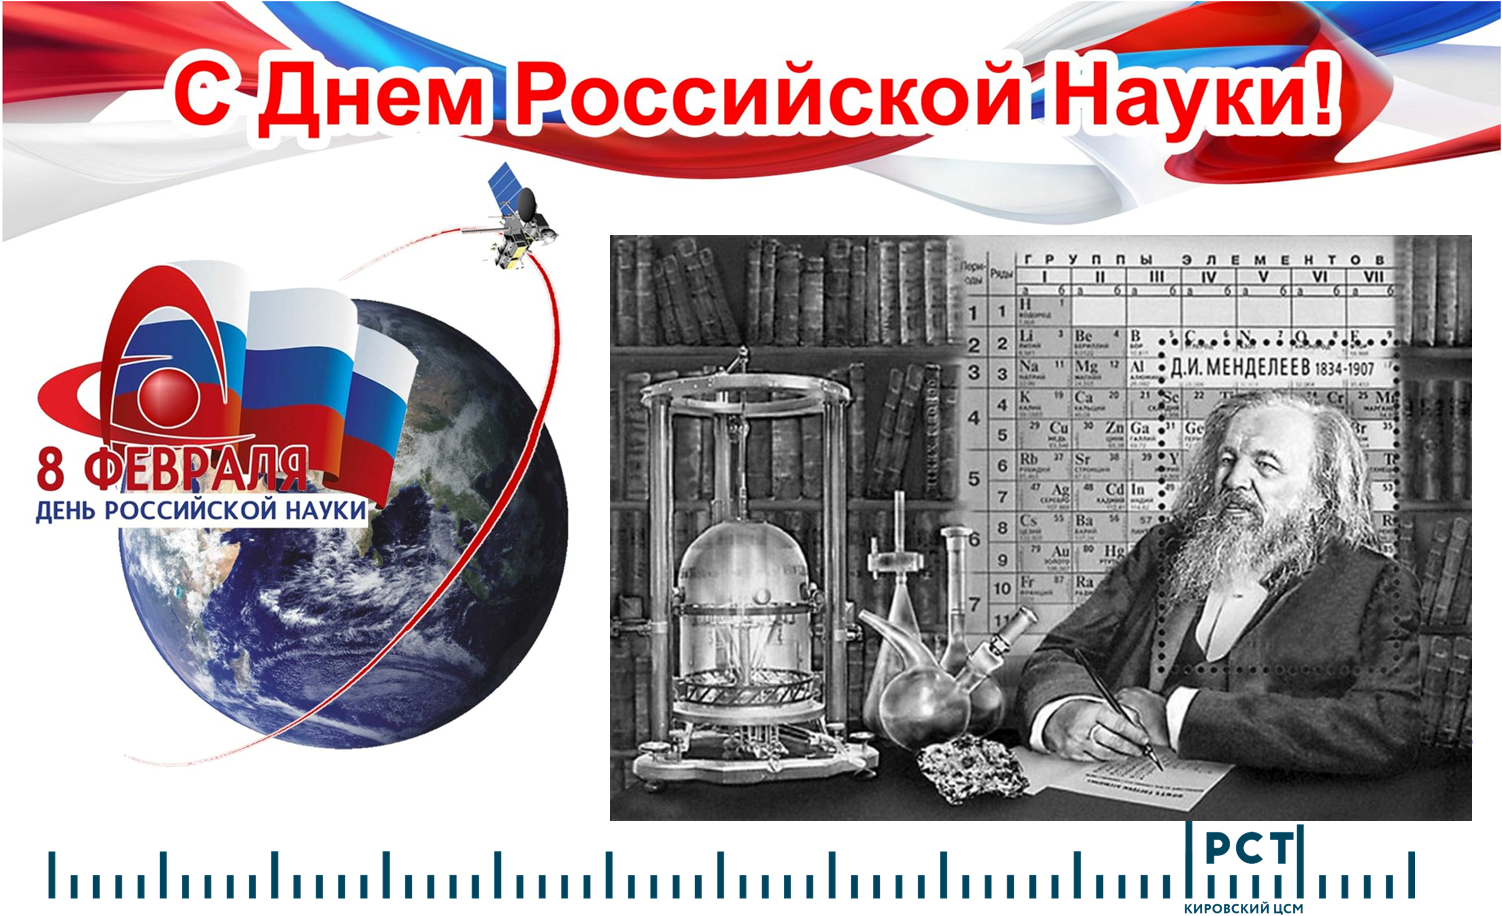 8 февраля – День российской науки..